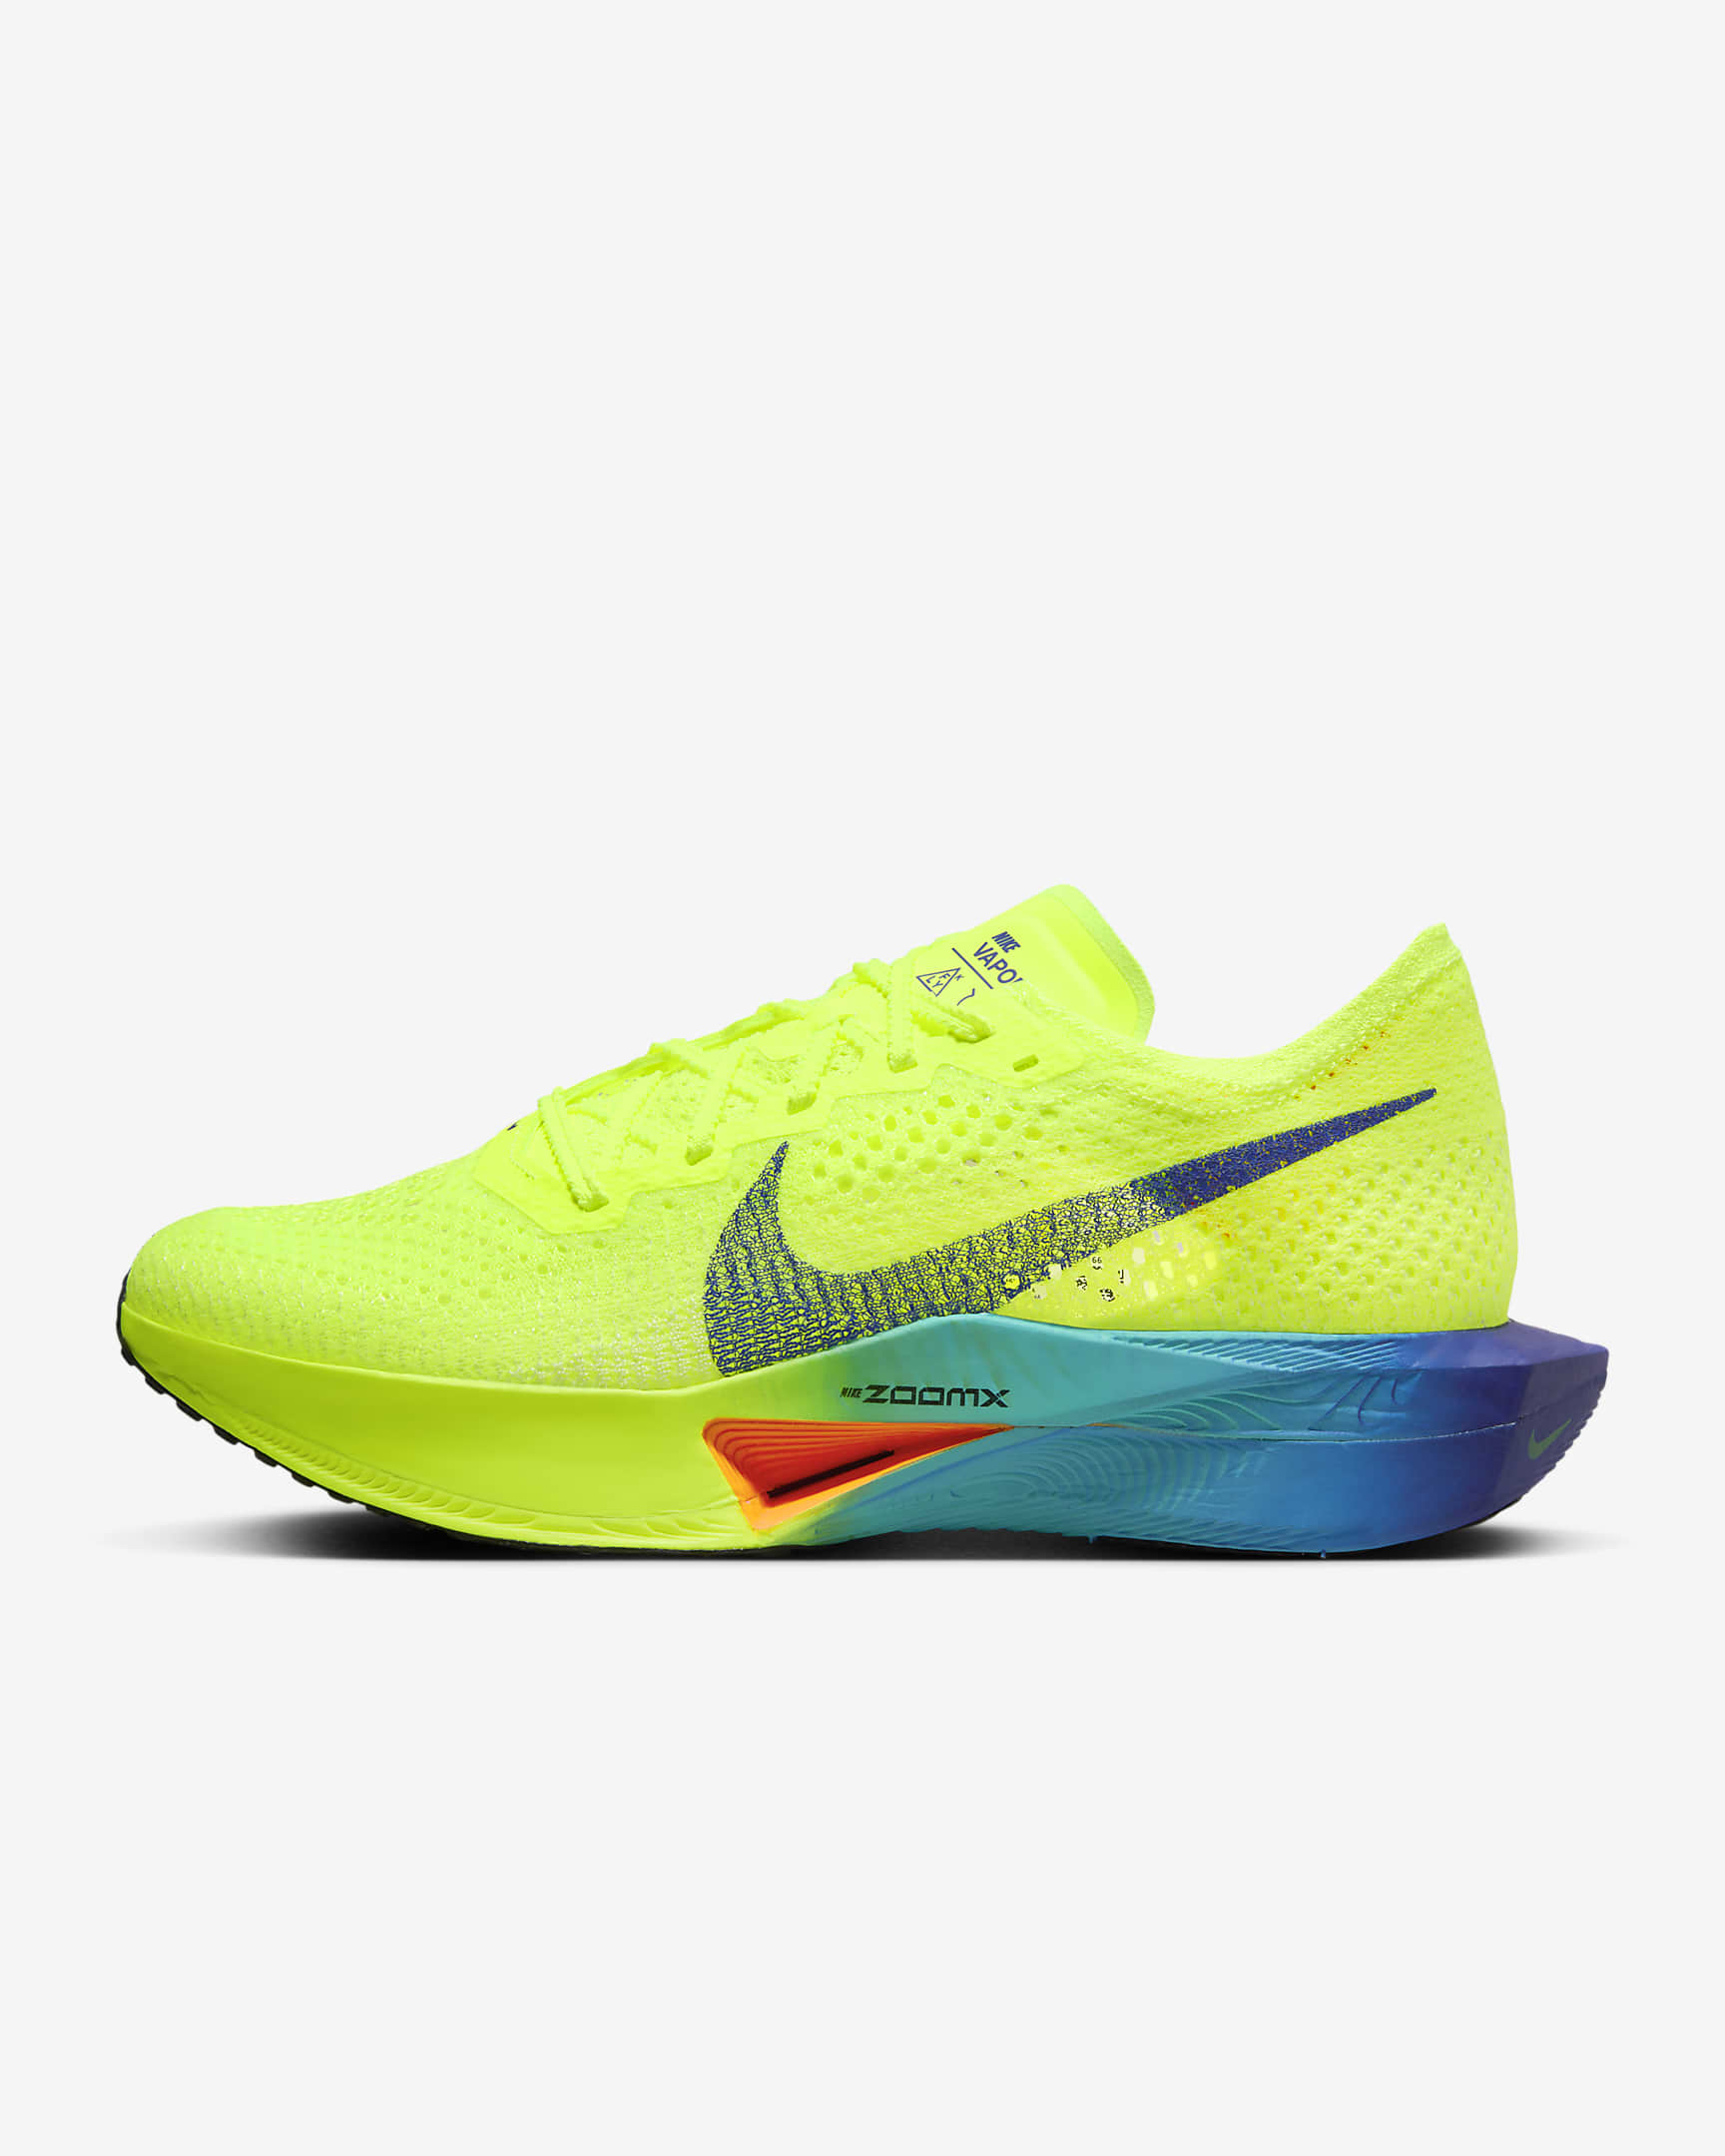 Nike Vaporfly 3 wedstrijdschoenen voor dames (straat) - Volt/Scream Green/Barely Volt/Zwart